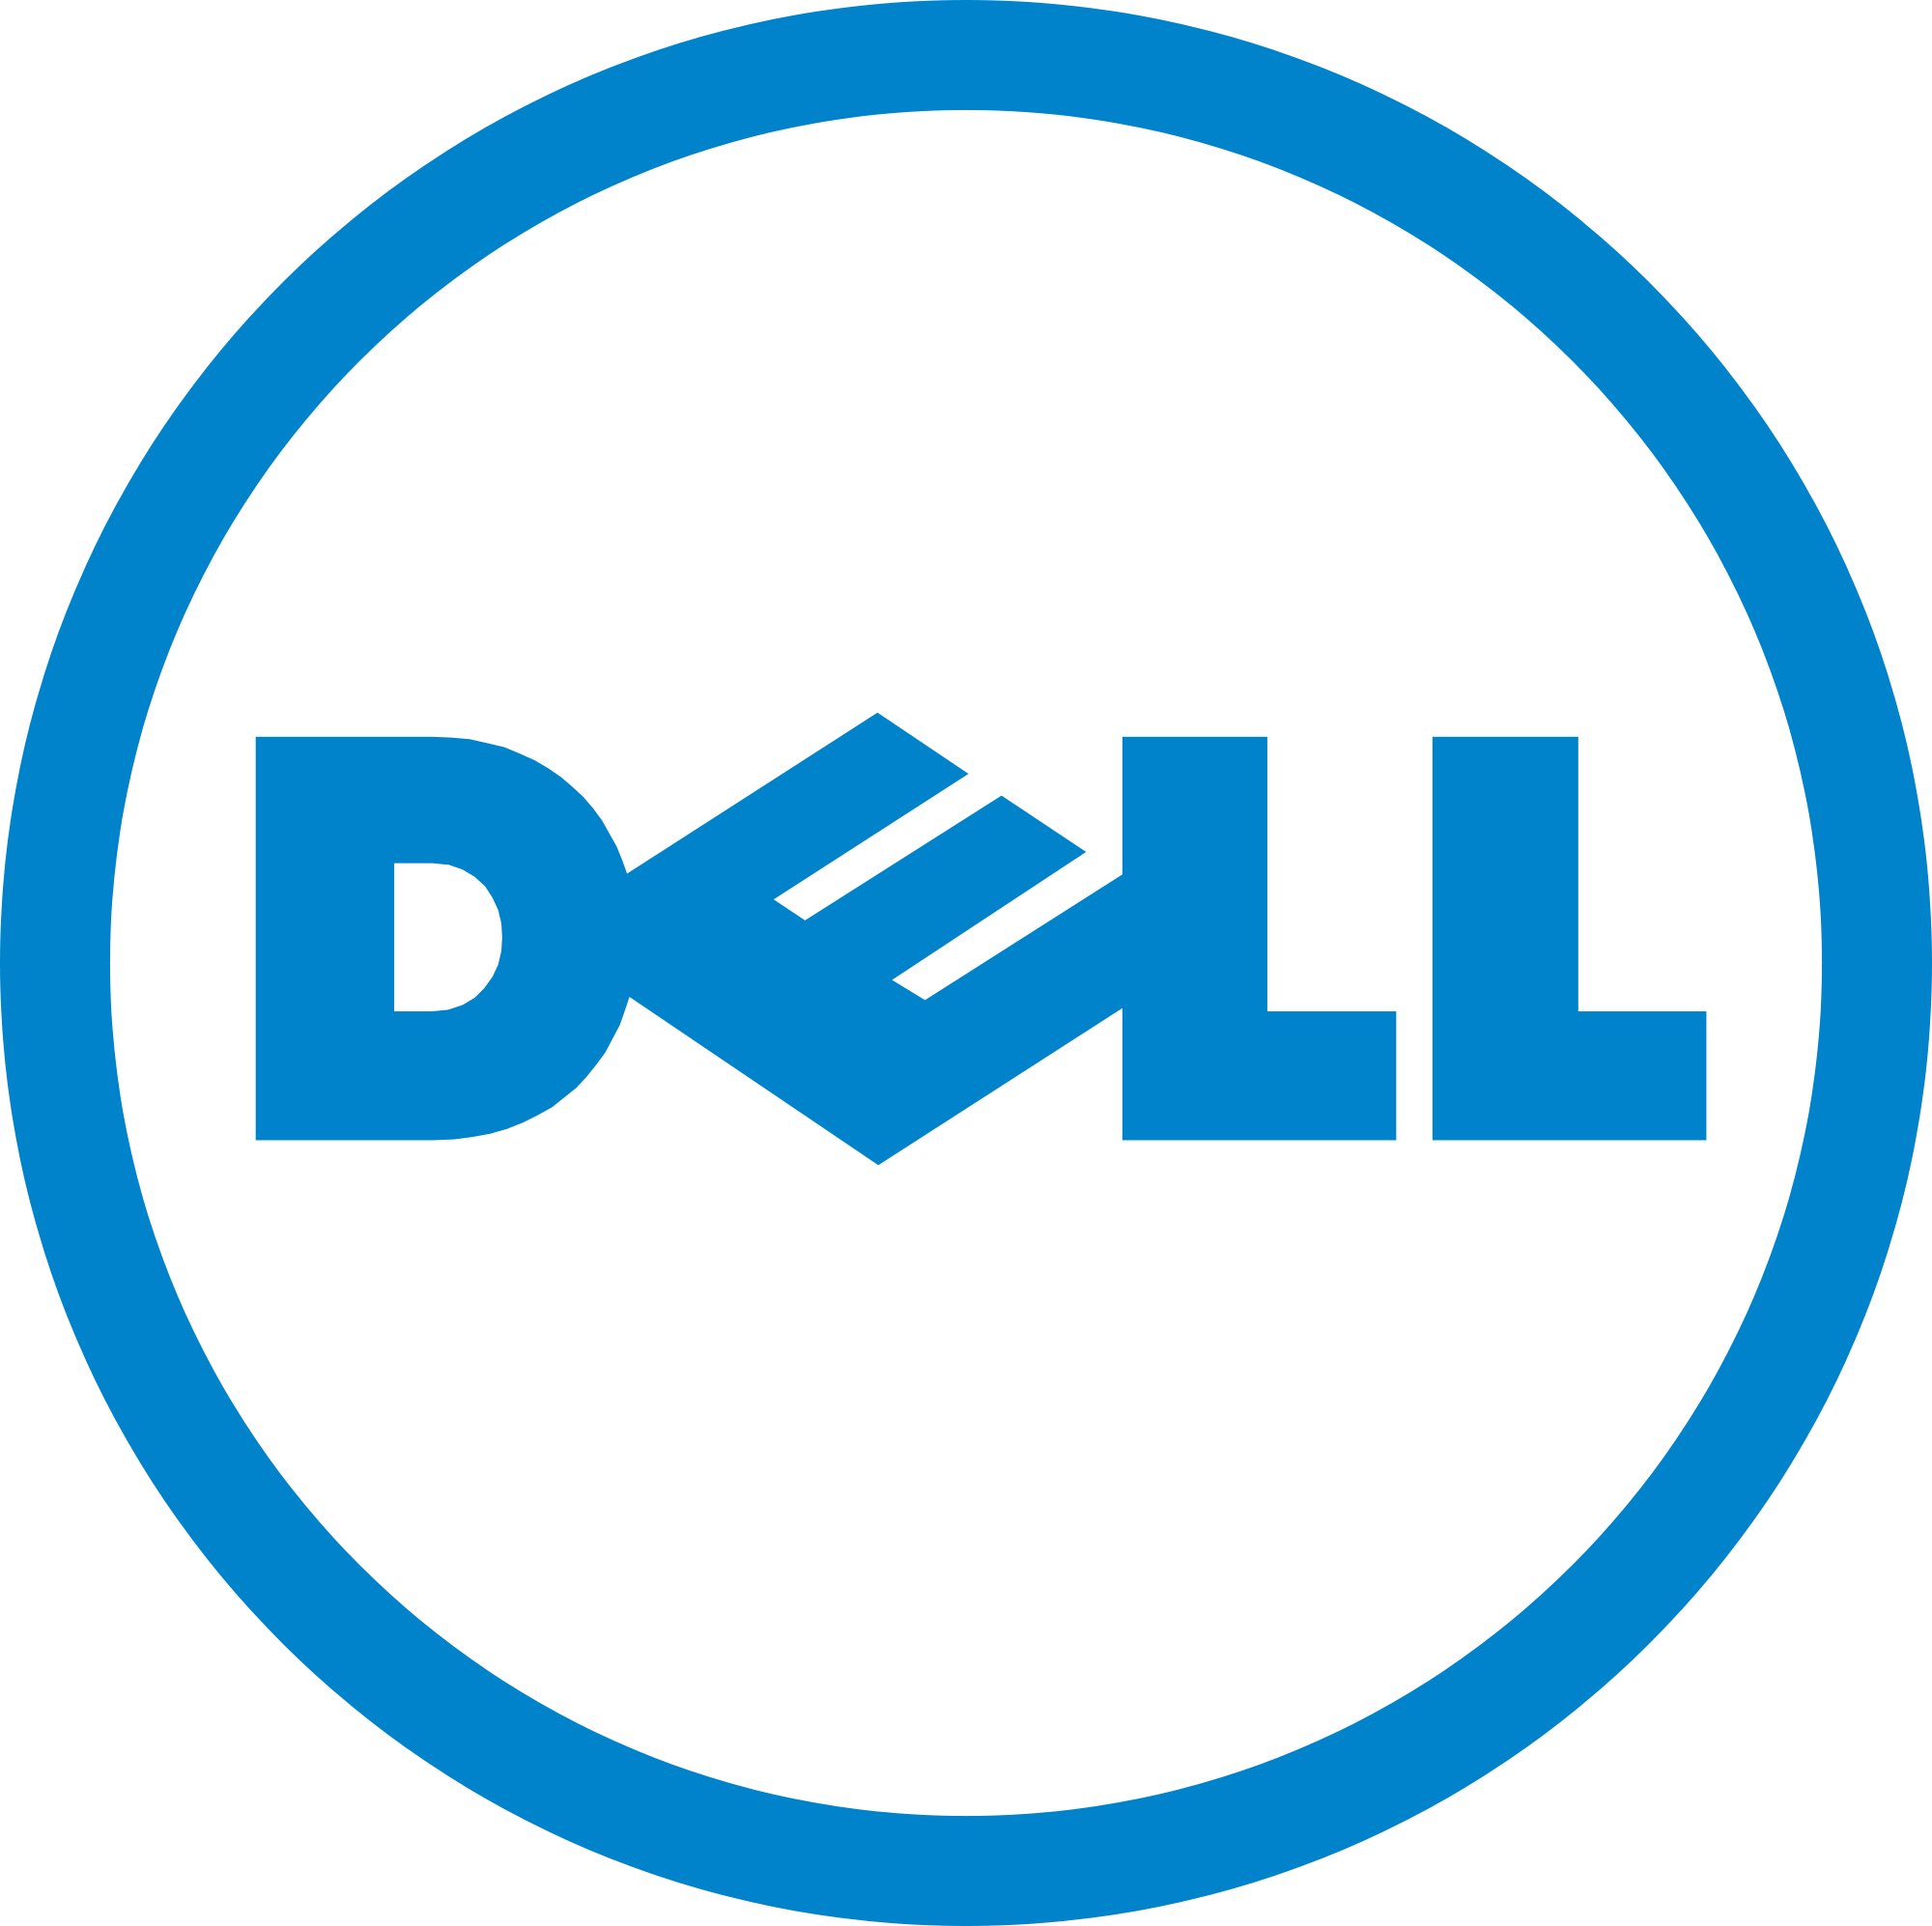 Laptop Dell XPS 15-7590 70196707 (Core i7-9750H/16Gb/512Gb SSD/15.6' FHD/GTX1650 4Gb/ Win10+Offi365/Silver/Vỏ nhôm)